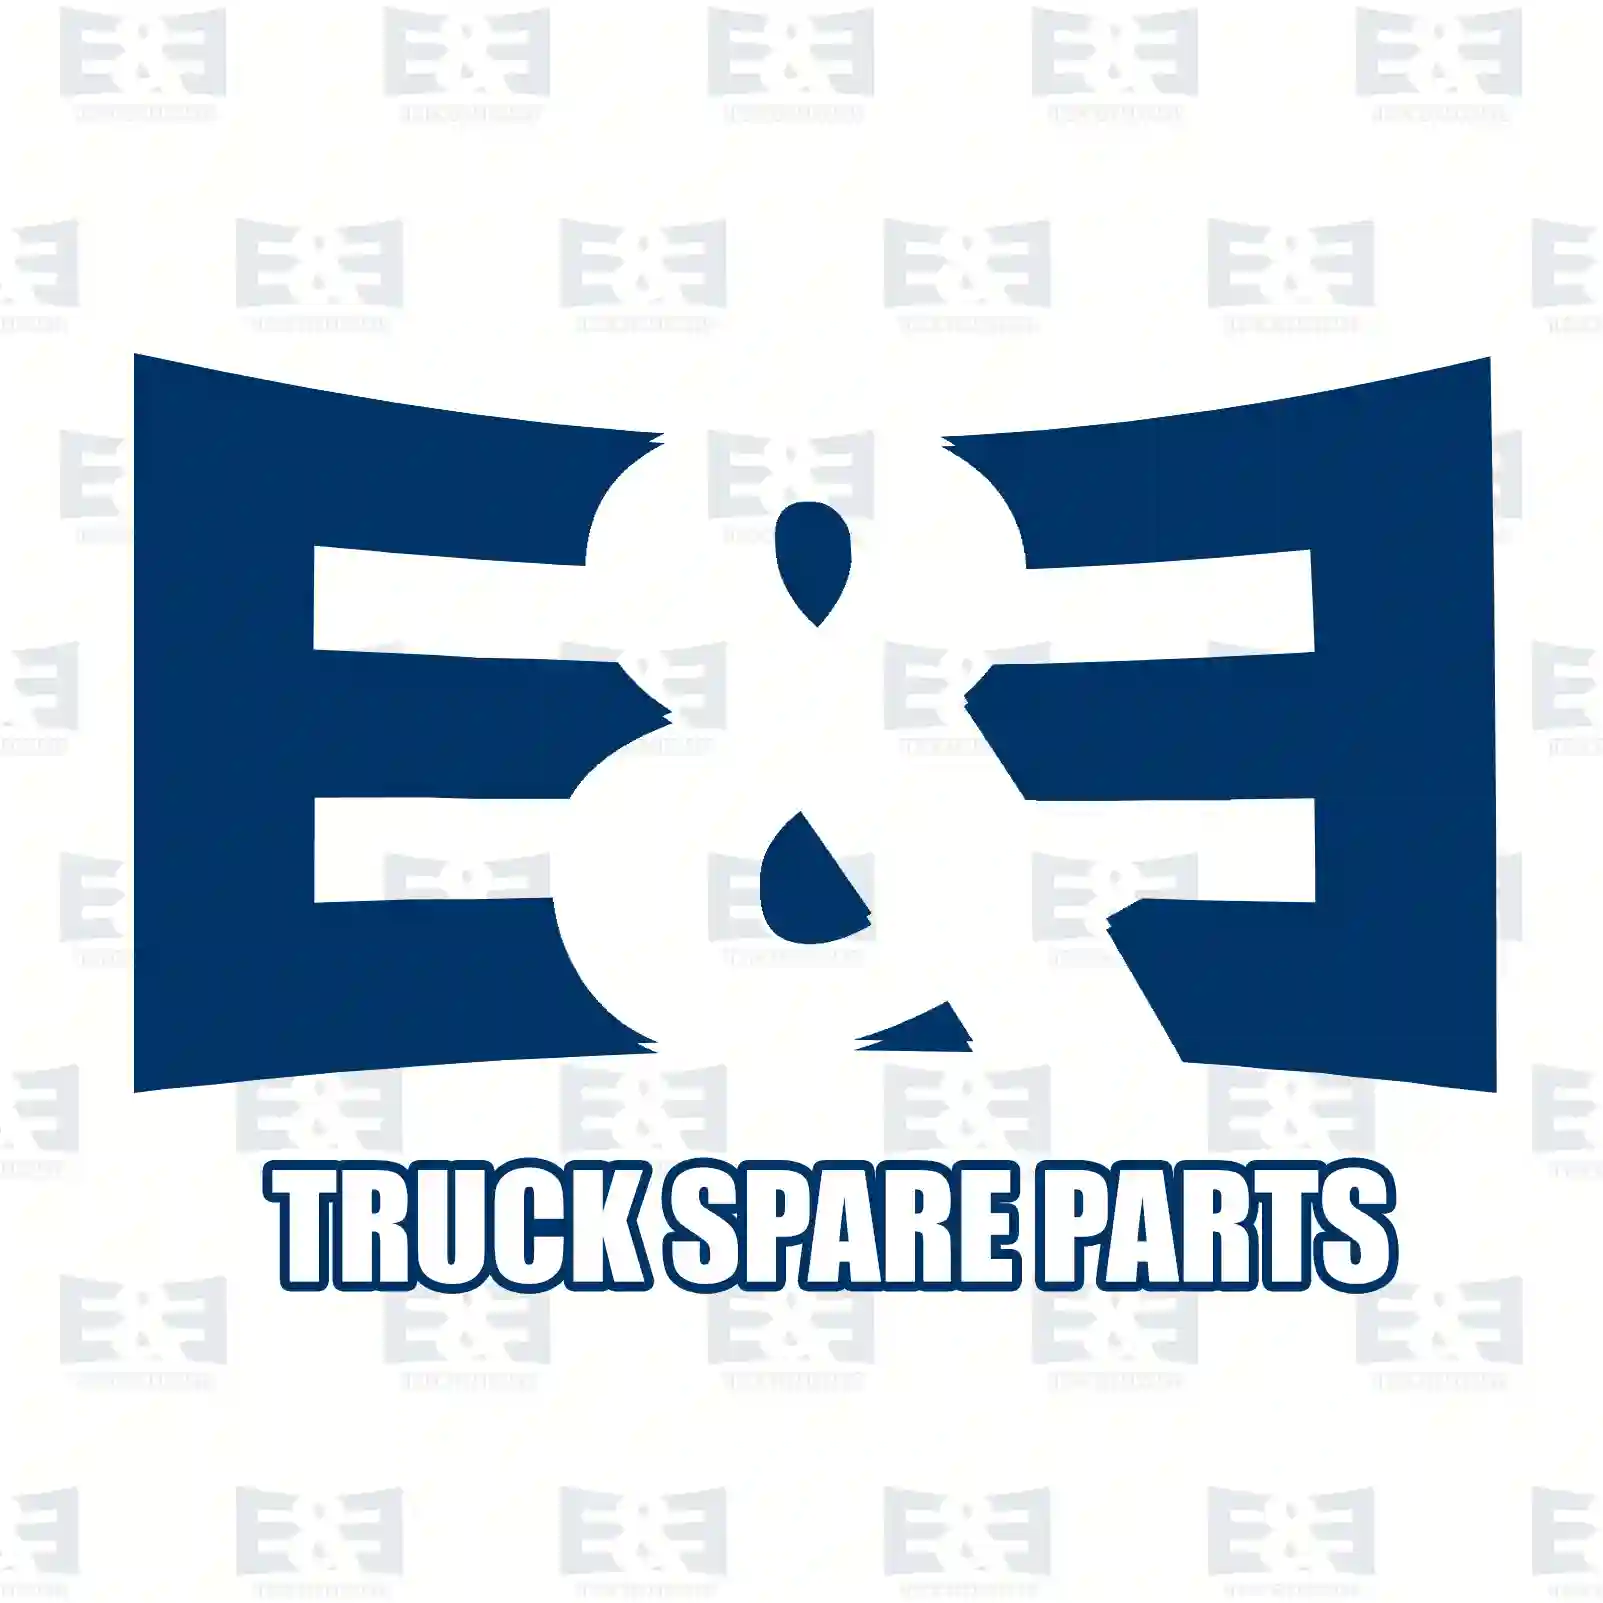 Screw, 2E2286156, 06014944935, 2V5803877AM, , , , , ||  2E2286156 E&E Truck Spare Parts | Truck Spare Parts, Auotomotive Spare Parts Screw, 2E2286156, 06014944935, 2V5803877AM, , , , , ||  2E2286156 E&E Truck Spare Parts | Truck Spare Parts, Auotomotive Spare Parts